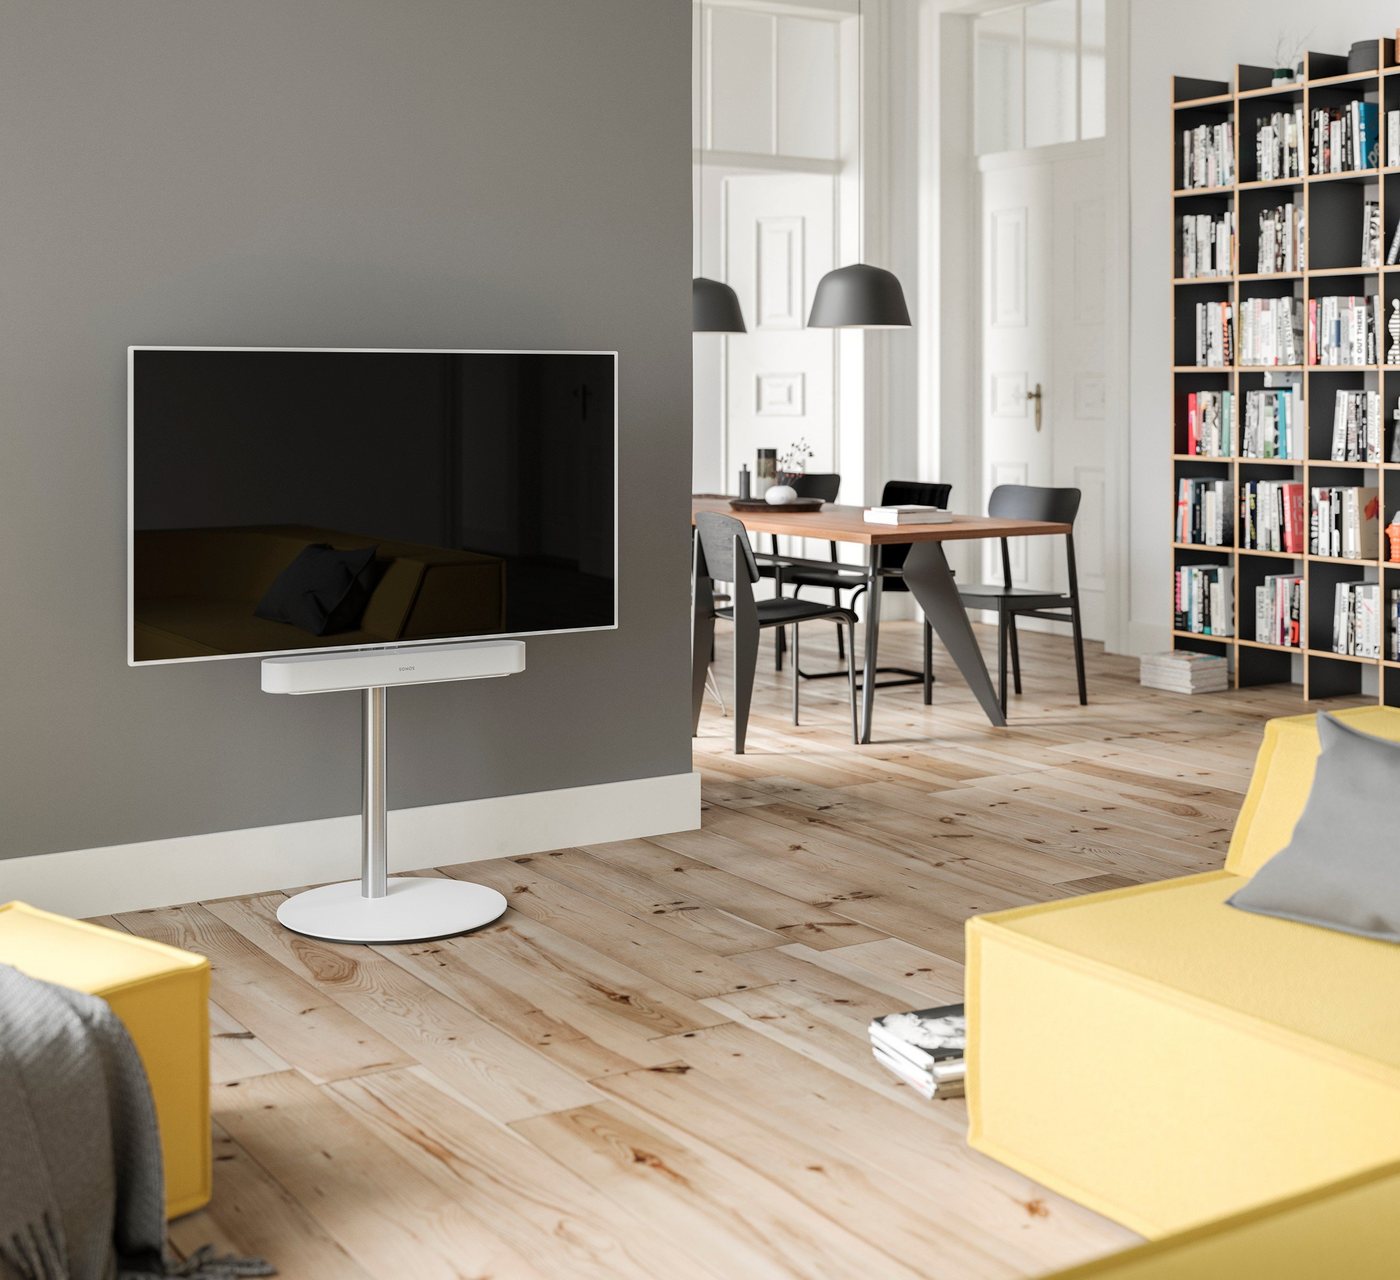 SPECTRAL Circle ist ein moderner wie auch edel anmutender TV-Stand mit drehbarer und höhenverstellbarer TV-Halterung. Stabile Sockelplatte aus Stahl mit satinierter Glasauflage. TV-Ständer, (für Bildschirme von 32'' bis 65) von SPECTRAL